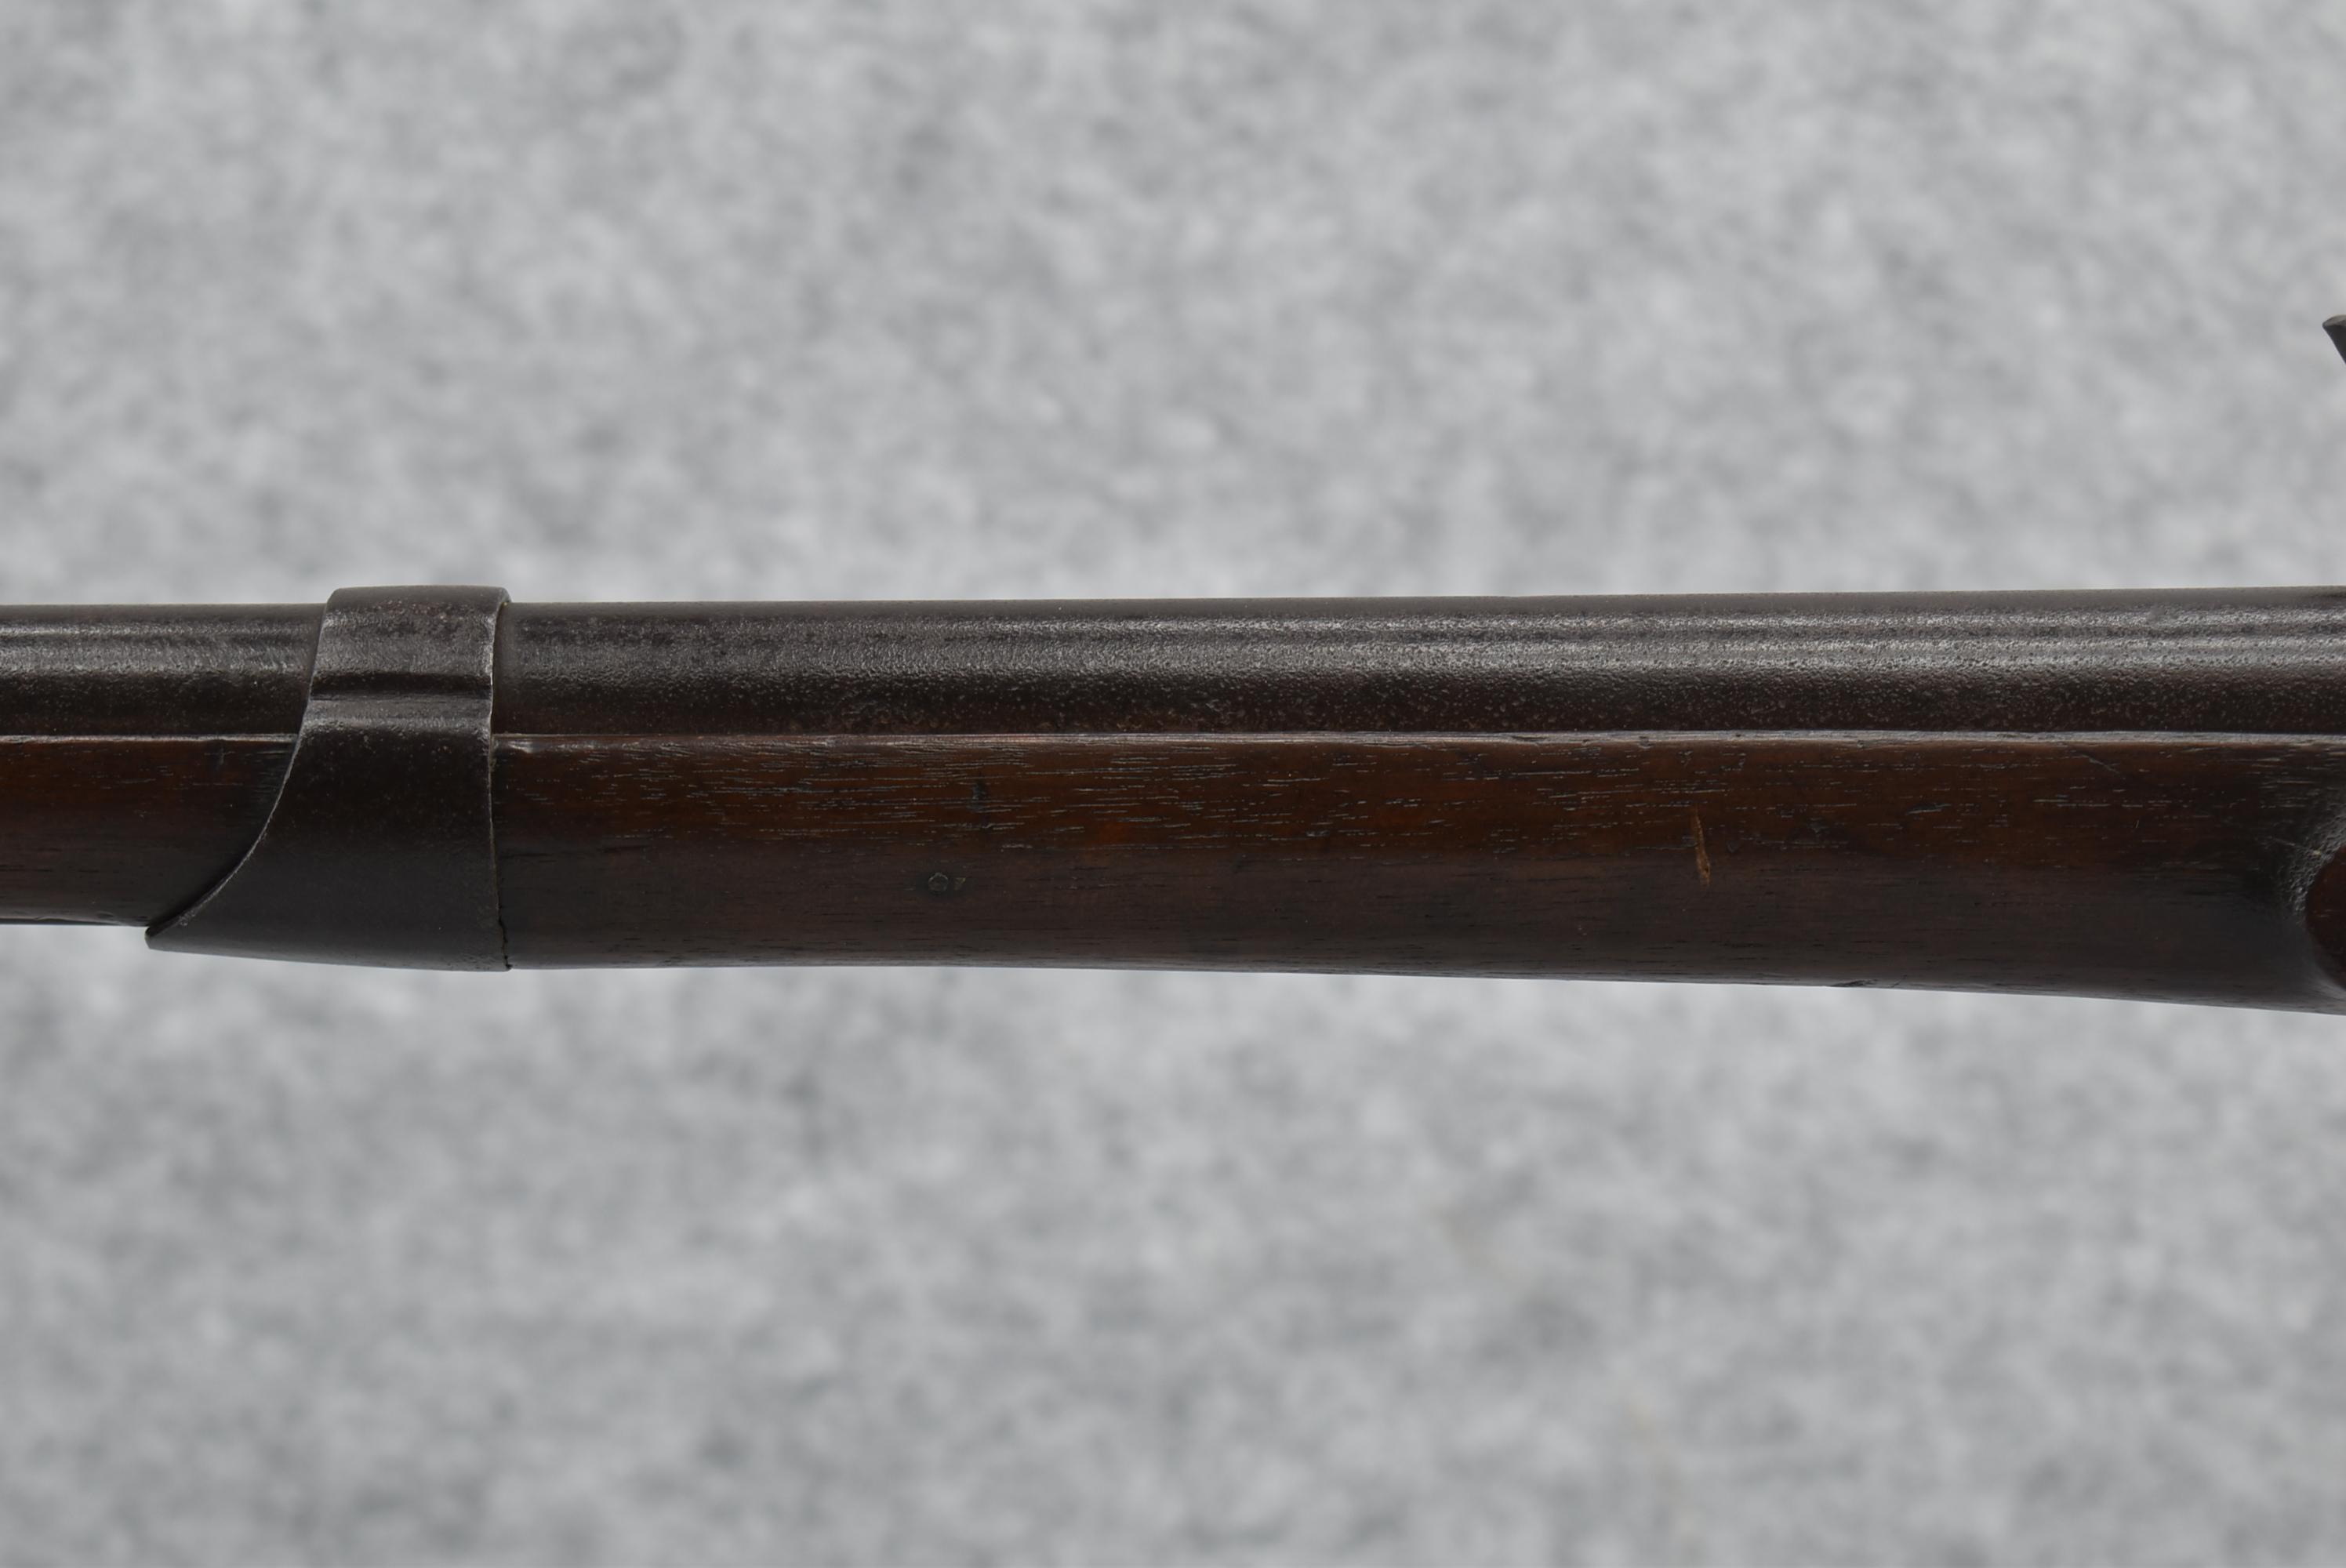 Rufus Perkins – 1808 U.S. Contract Musket – 69 Cal. Flintlock Musket